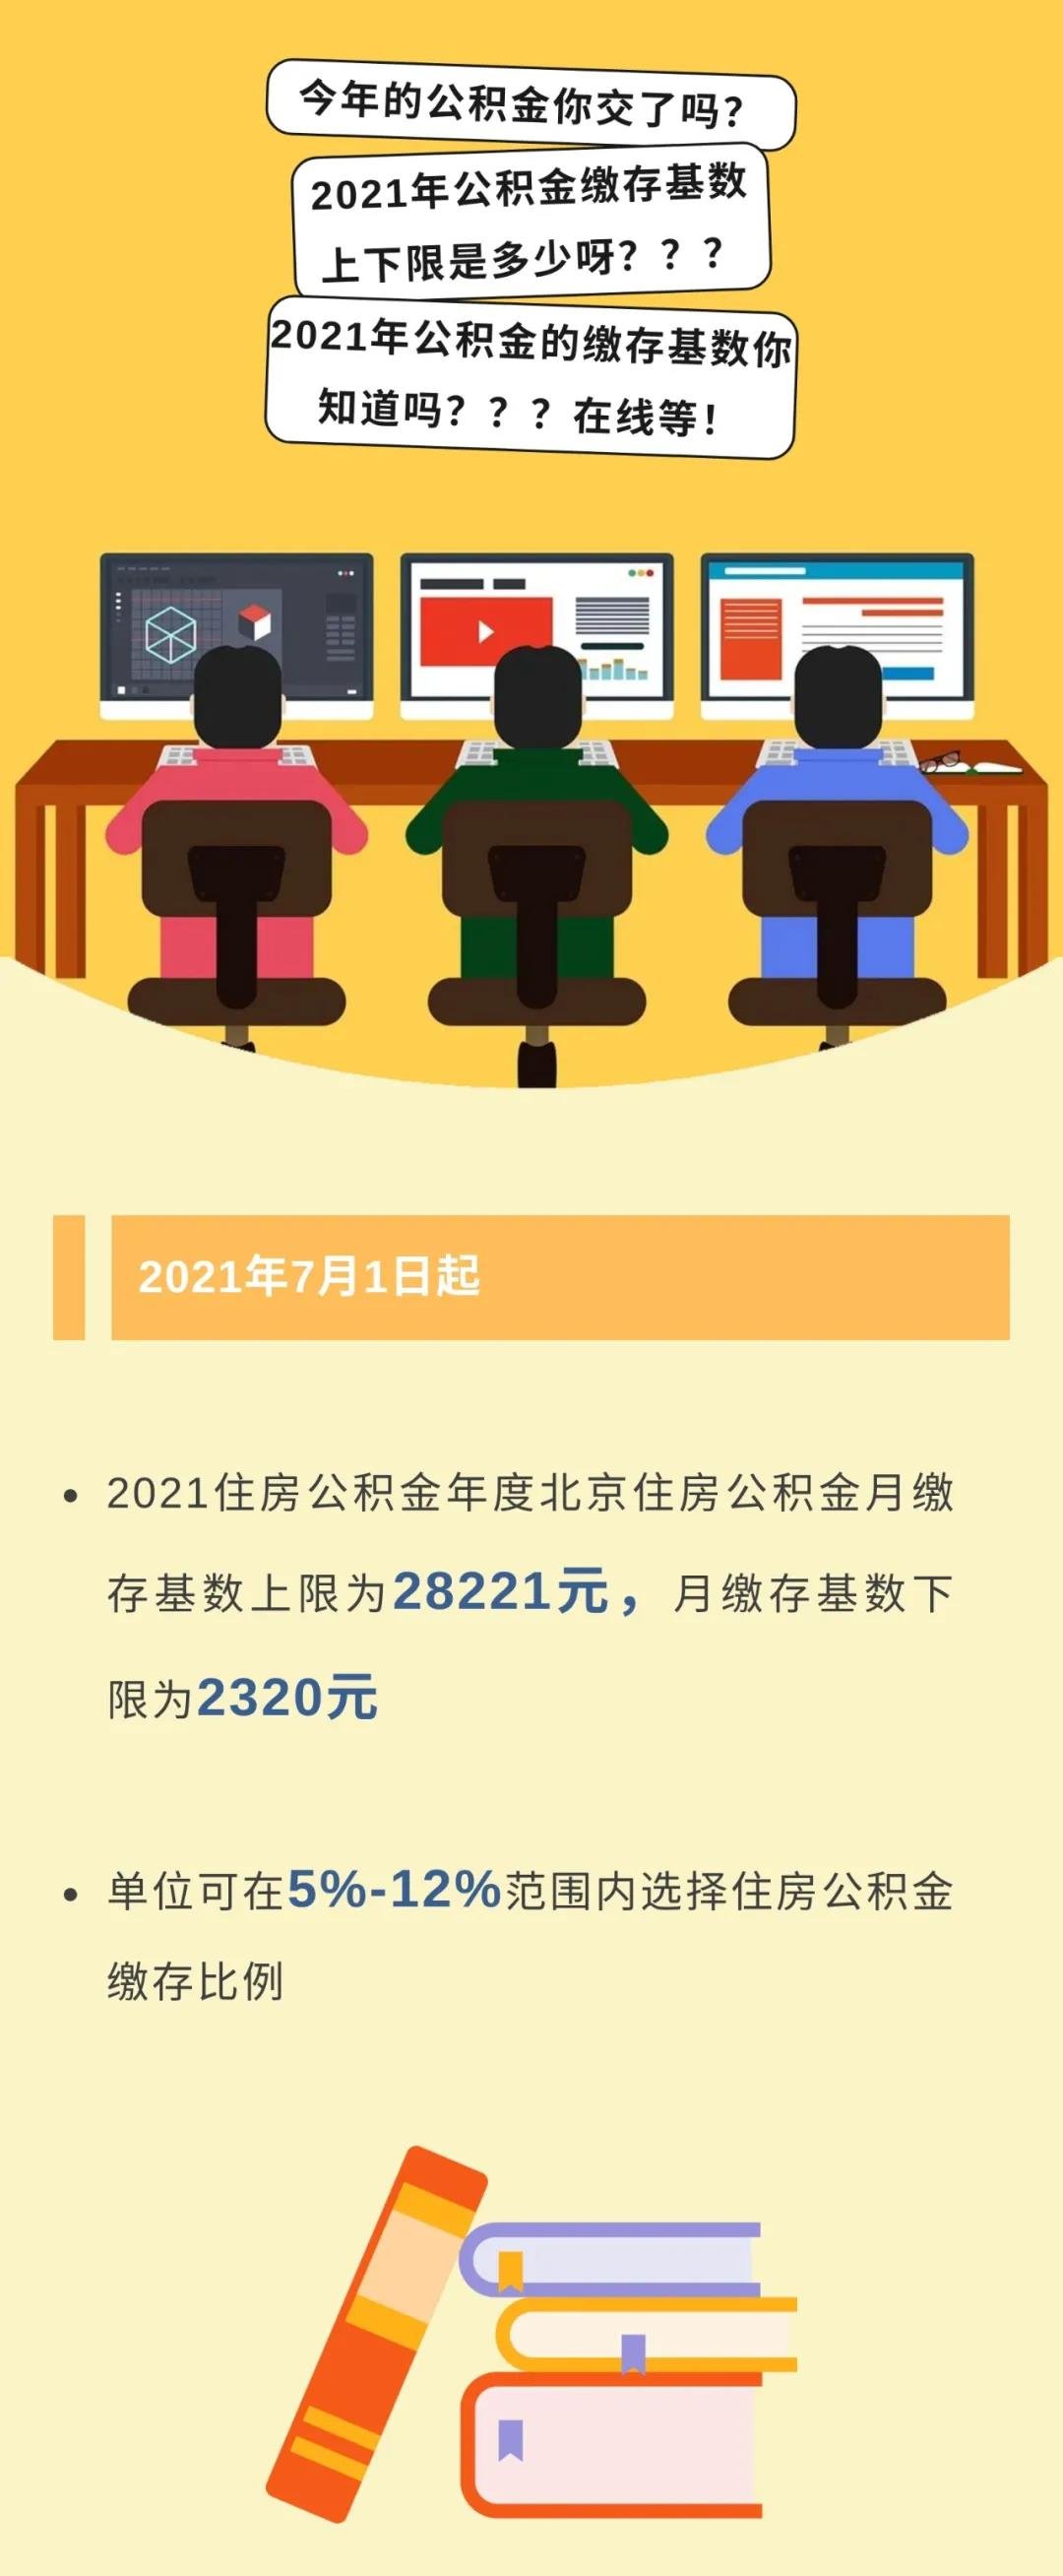 北京2021年度公积金缴存基数上下限 缴存基数上限为28221元